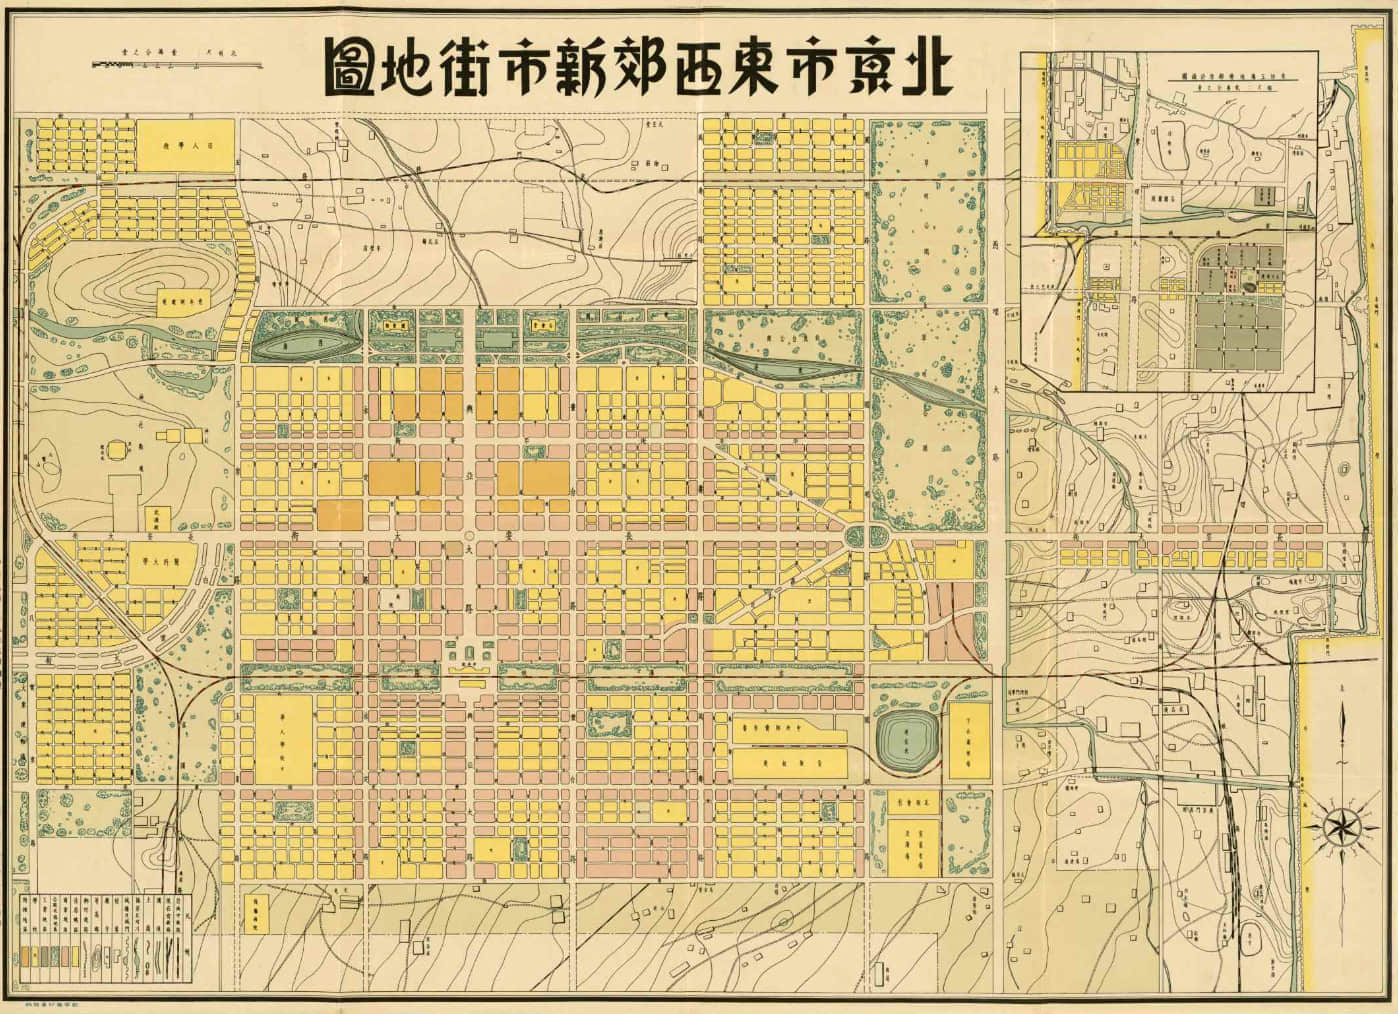 日本人制订的北京东西郊新市街地图。［京都国际日本文化研究中心 https://www.nichibun.ac.jp］